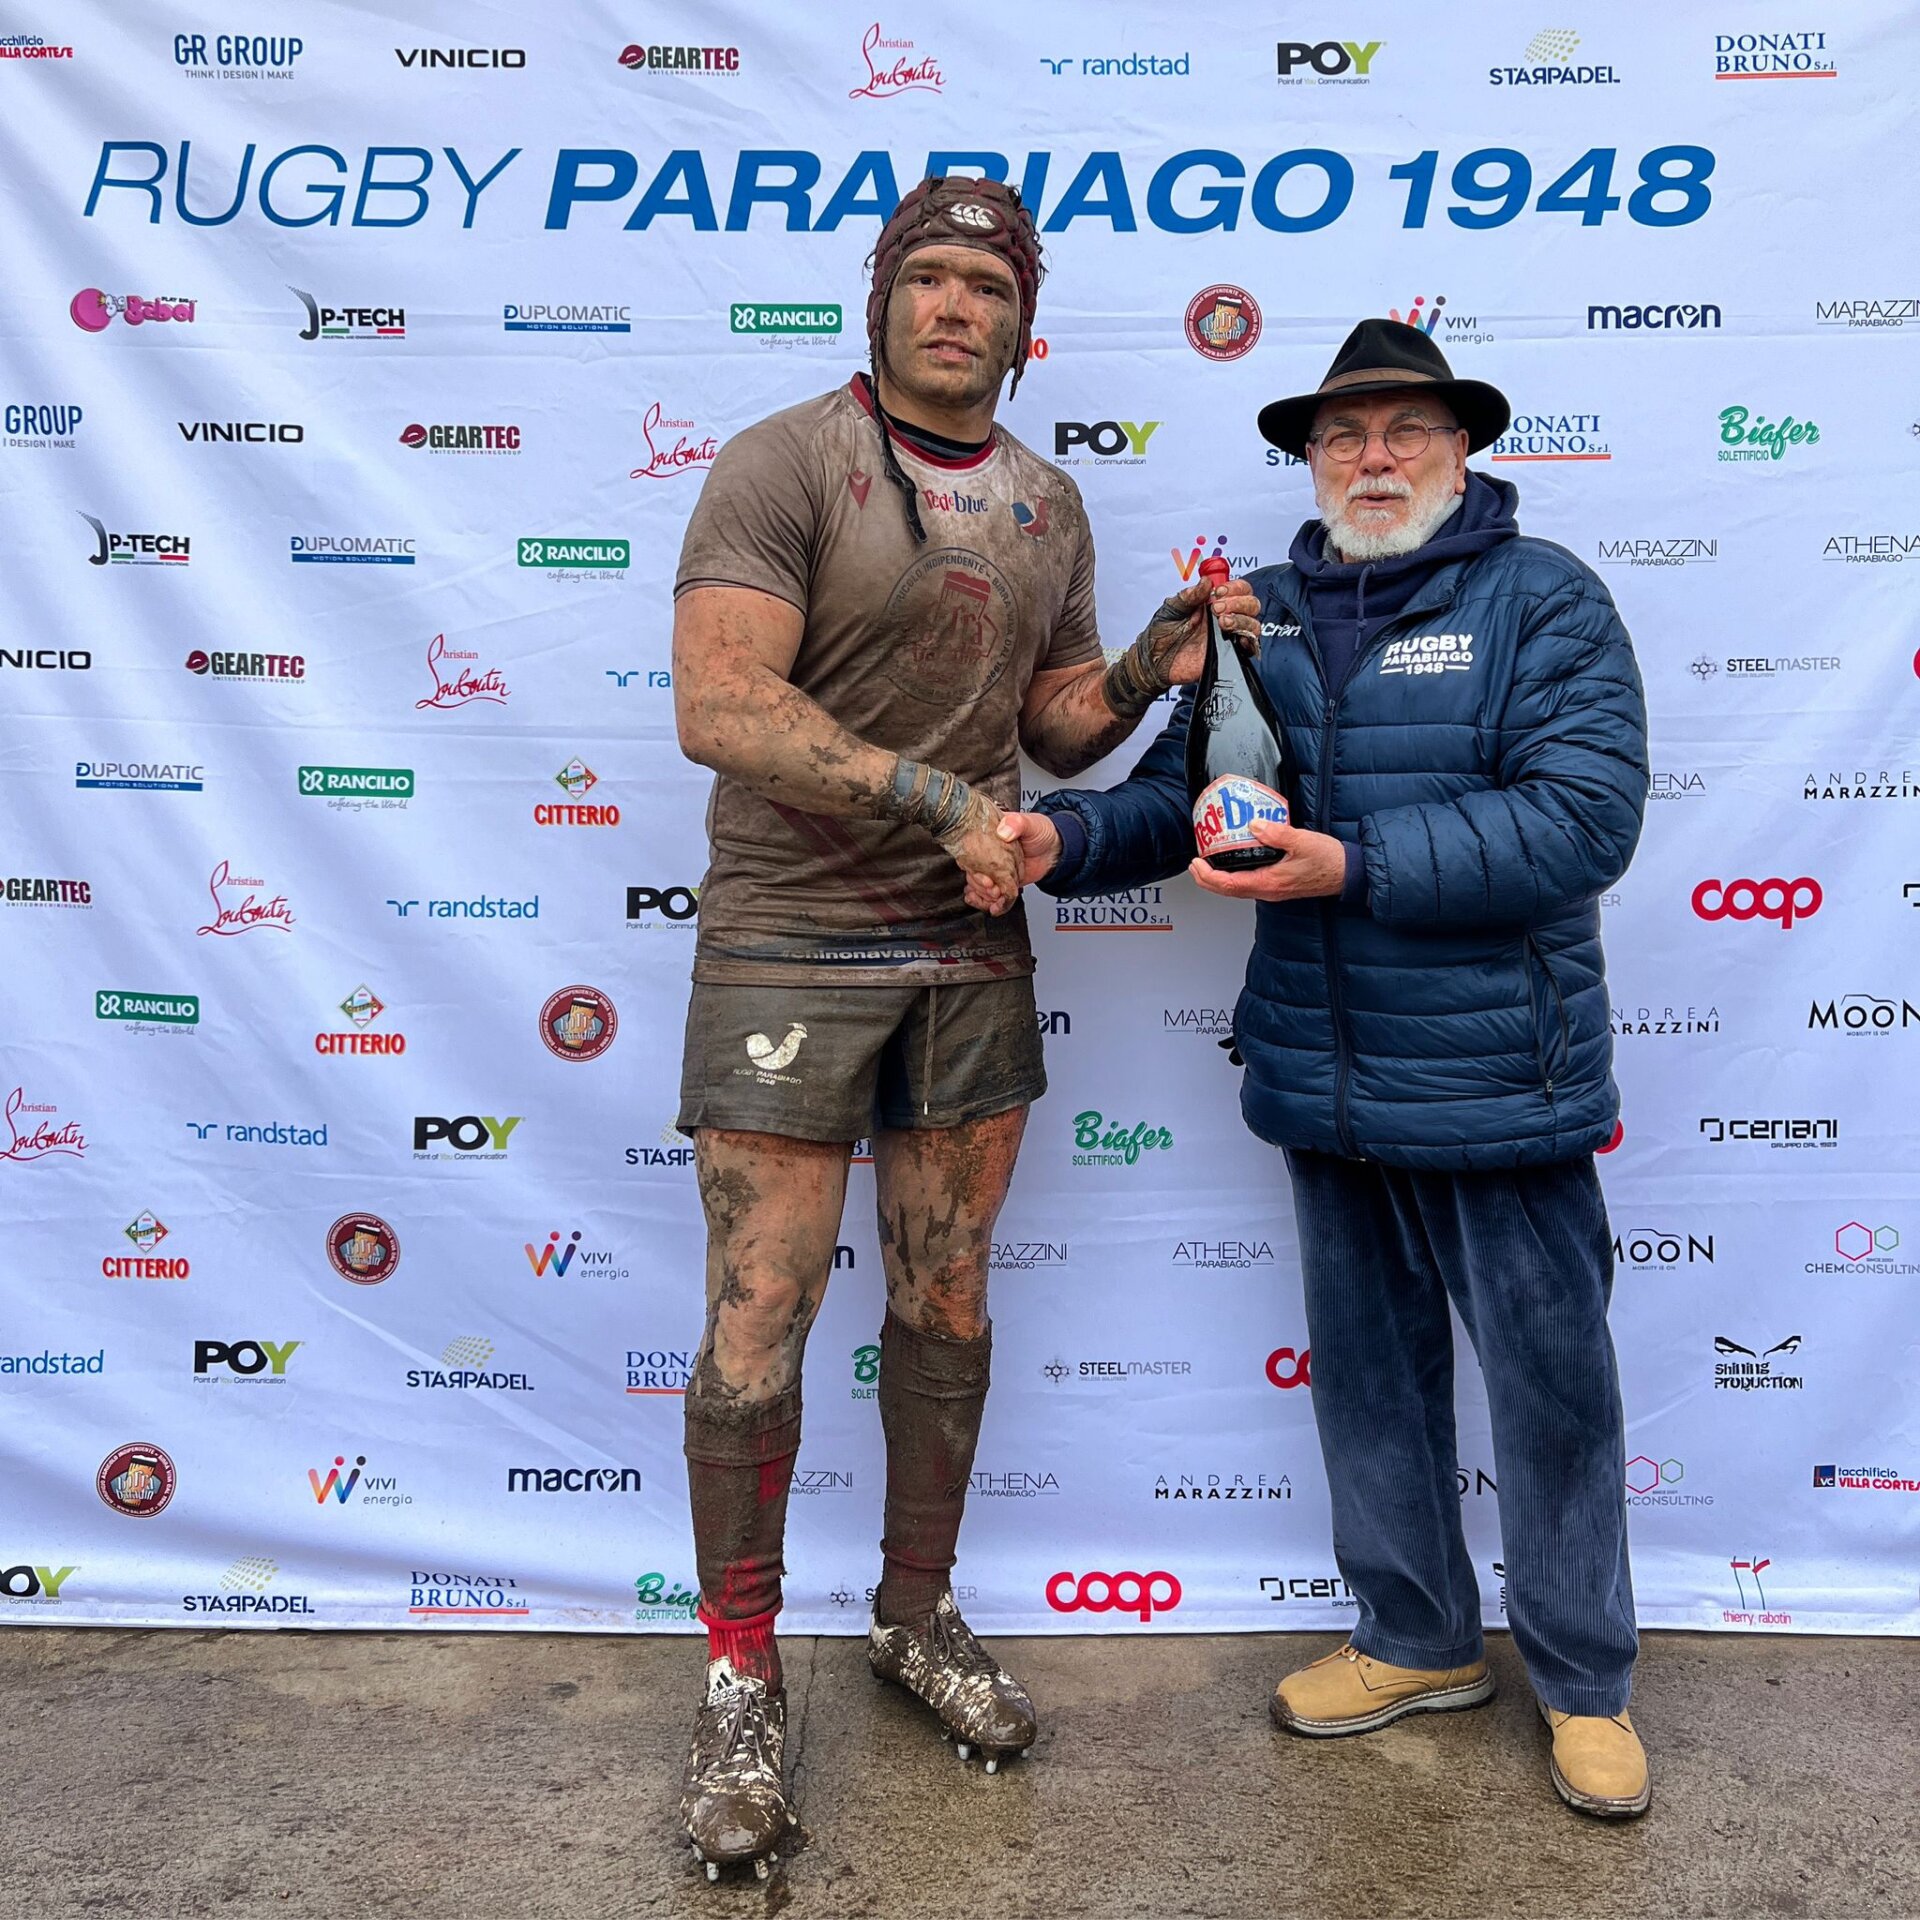 Galletti Rugby Parabiago